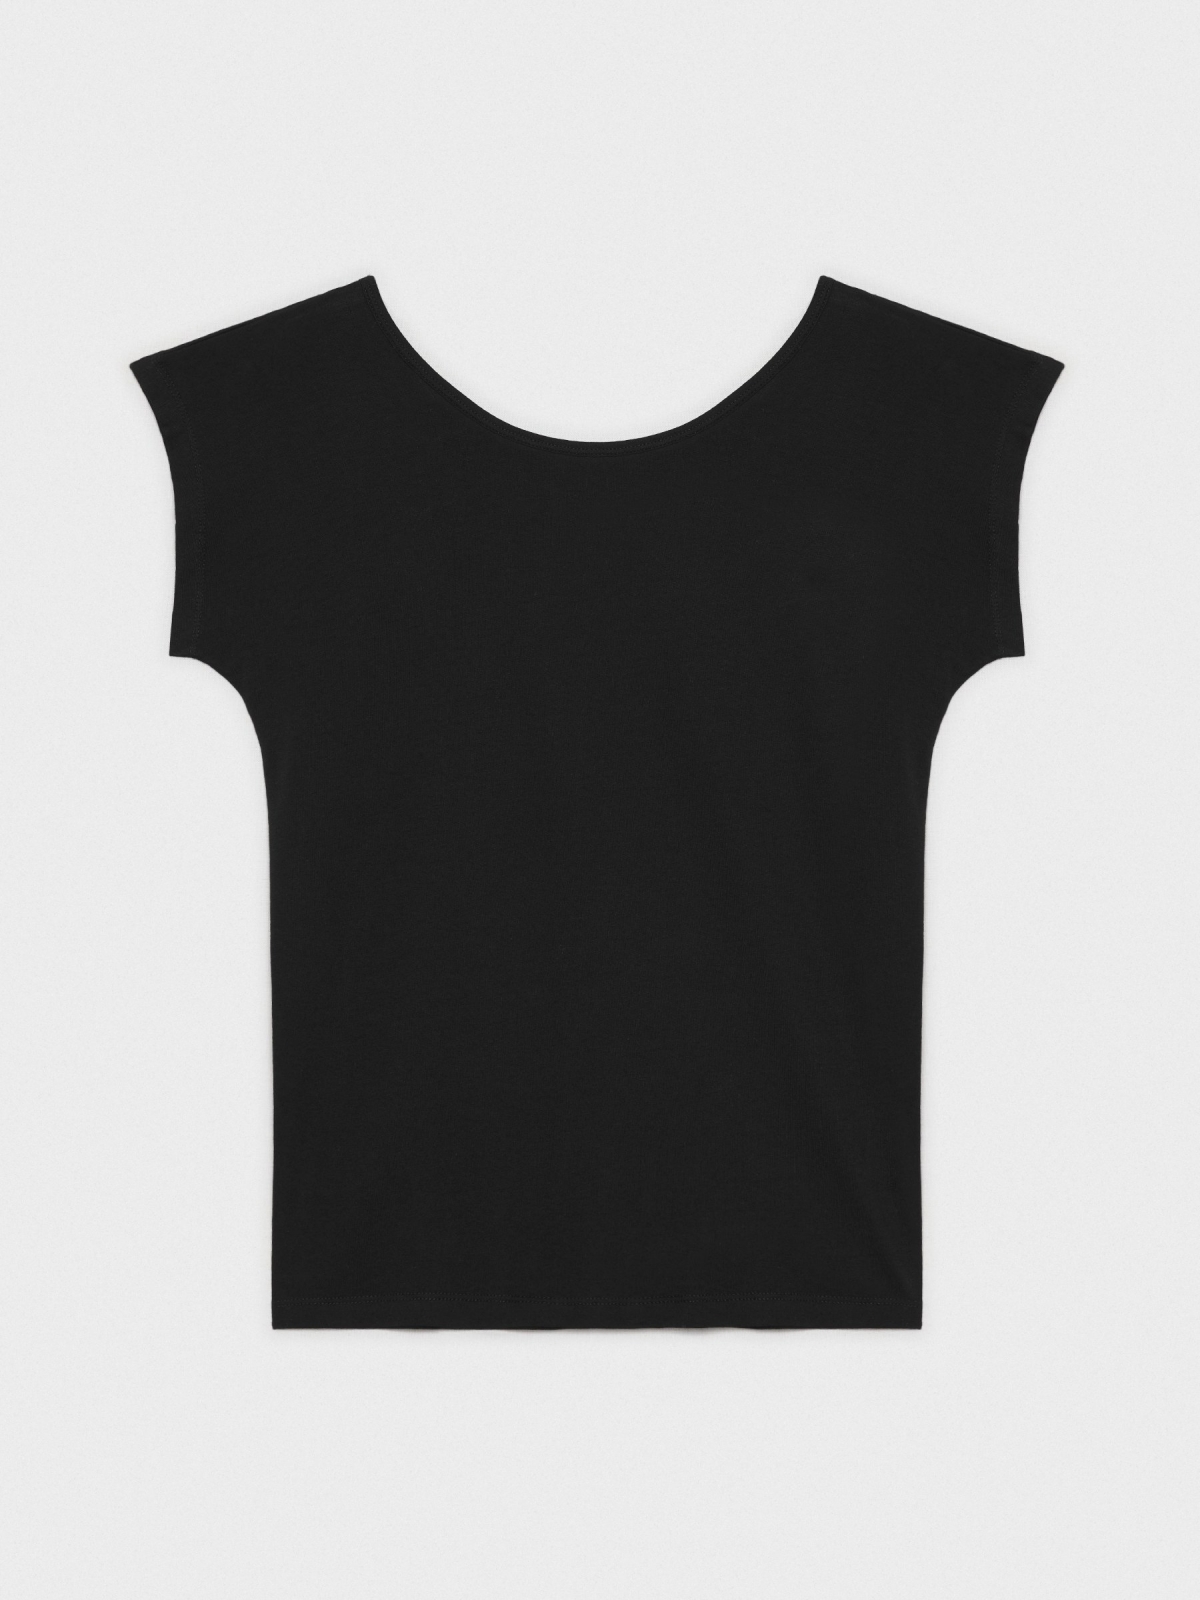  T-shirt com decote nas costas preto